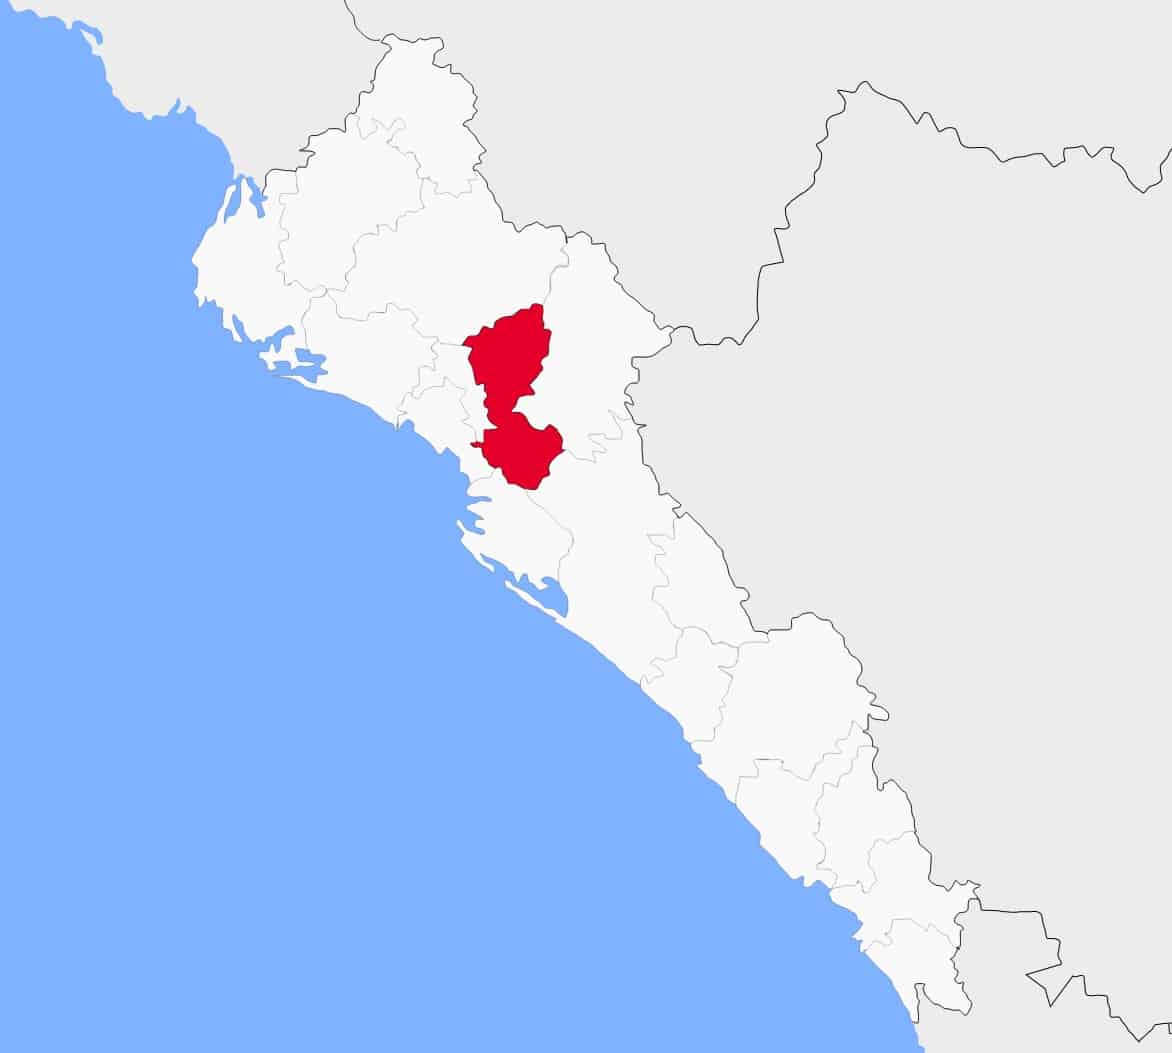 Mapa de Mocorito en el estado de Sinaloa. Imagen tomada de internet.